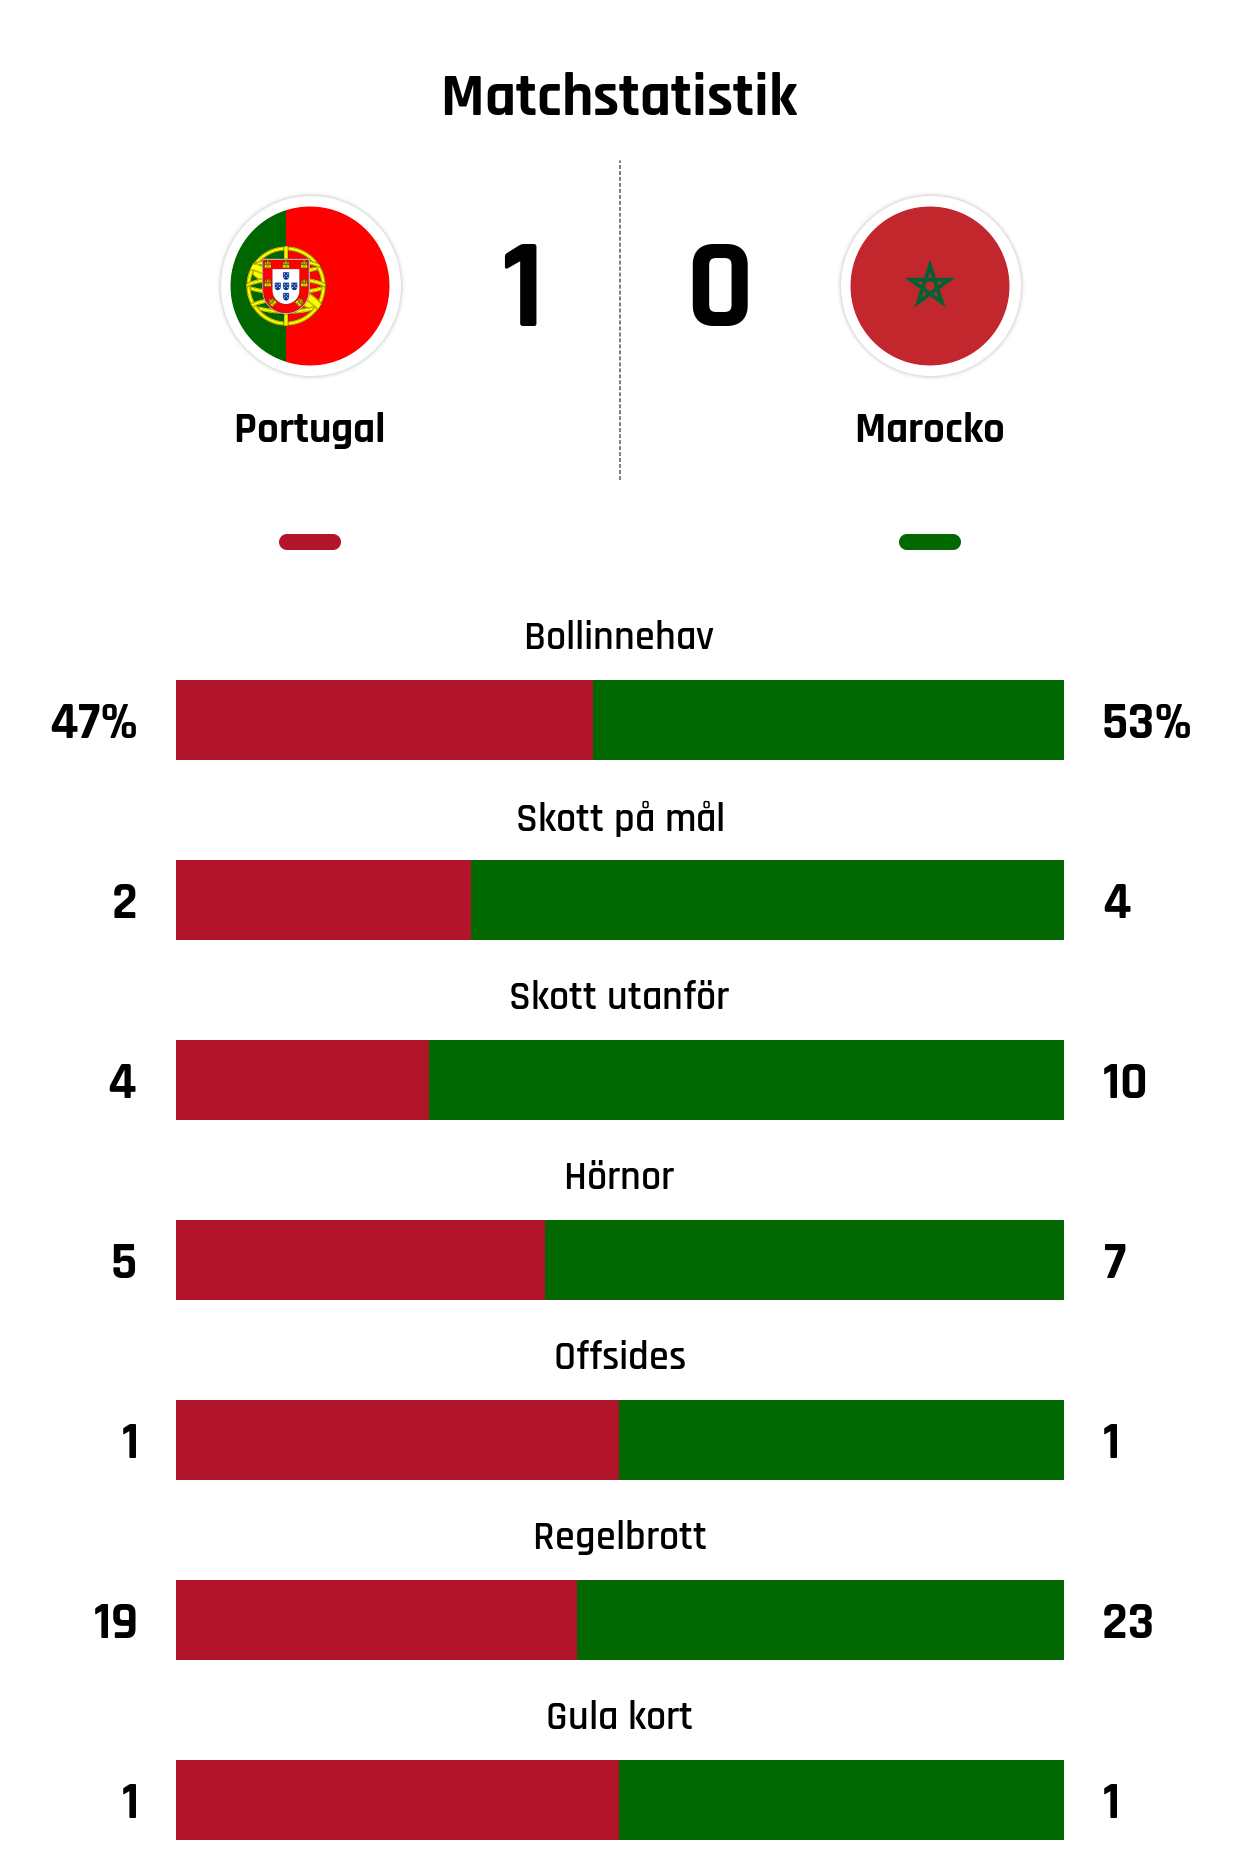 Bollinnehav 47%-53%
Skott på mål 2-4
Skott utanför 4-10
Hörnor 5-7
Offsides 1-1
Regelbrott 19-23
Gula kort 1-1